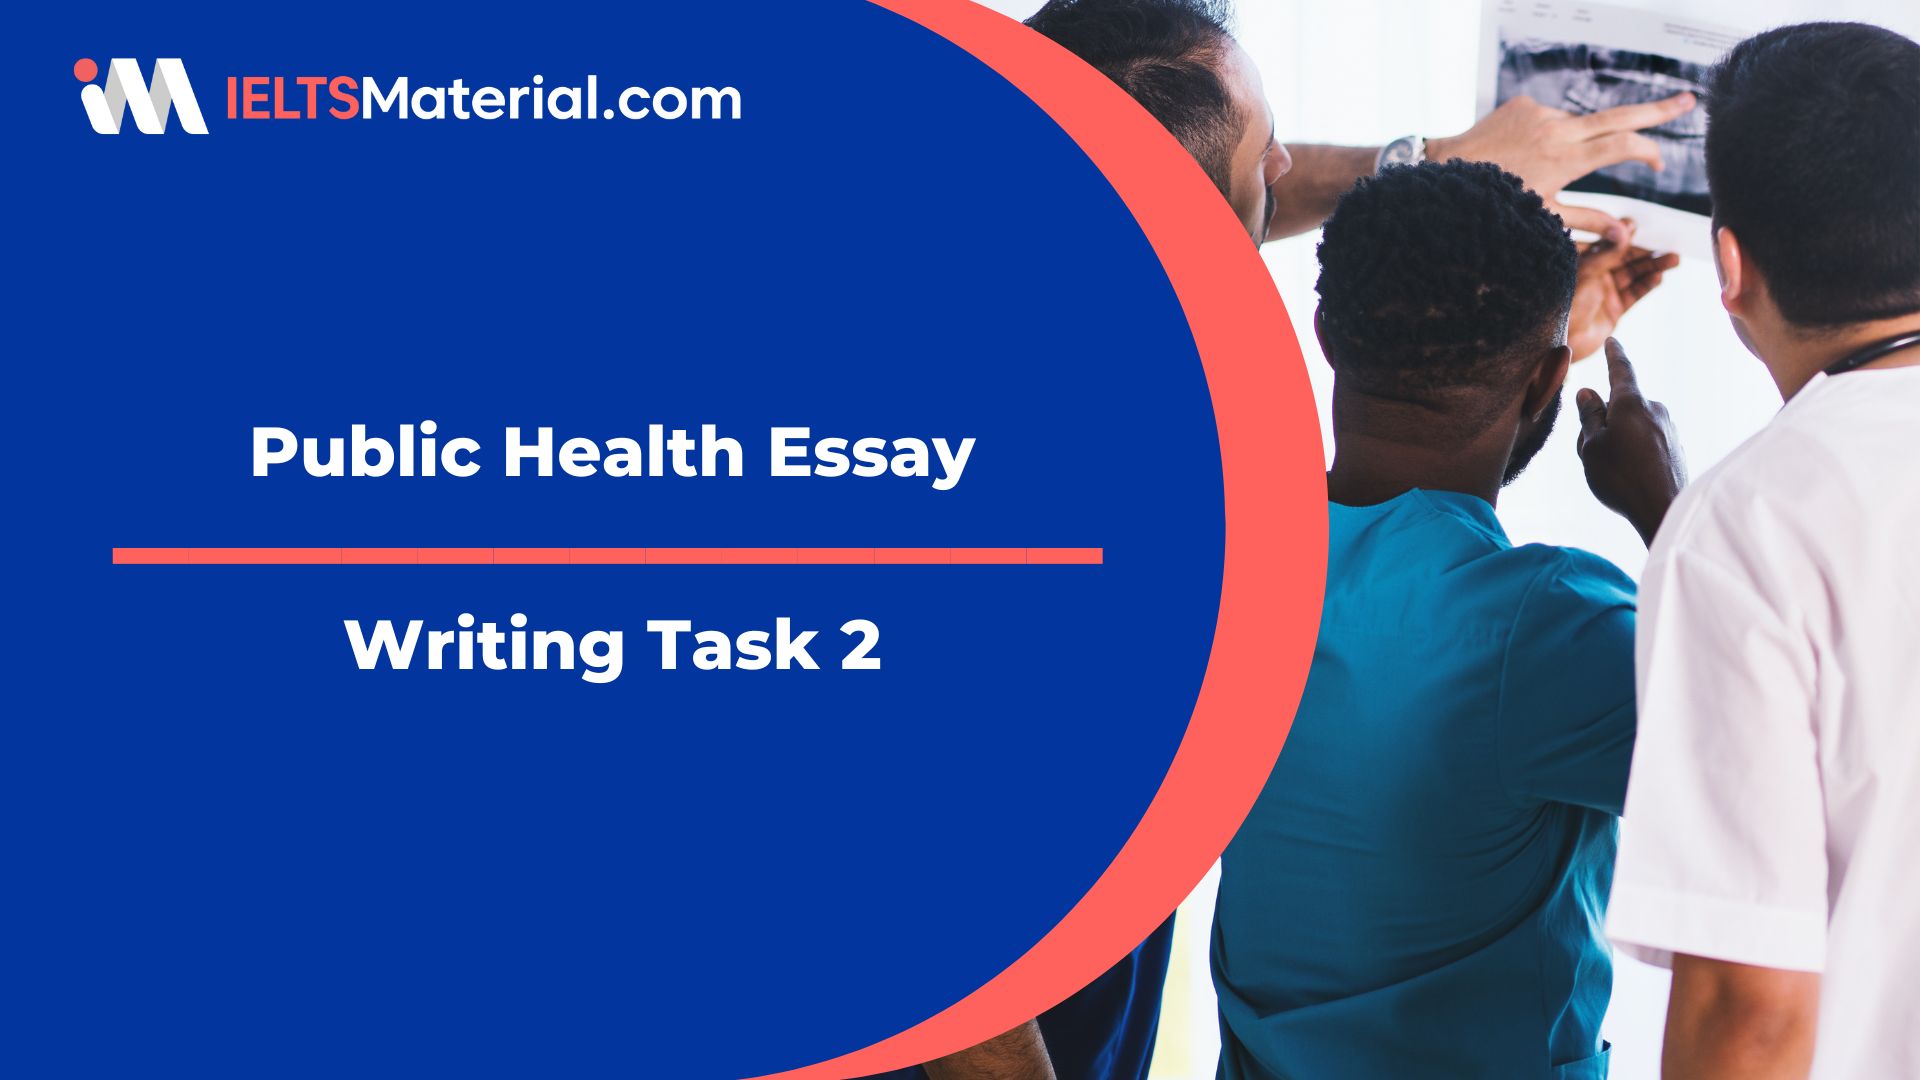 Writing Task 2: Public Health Essay